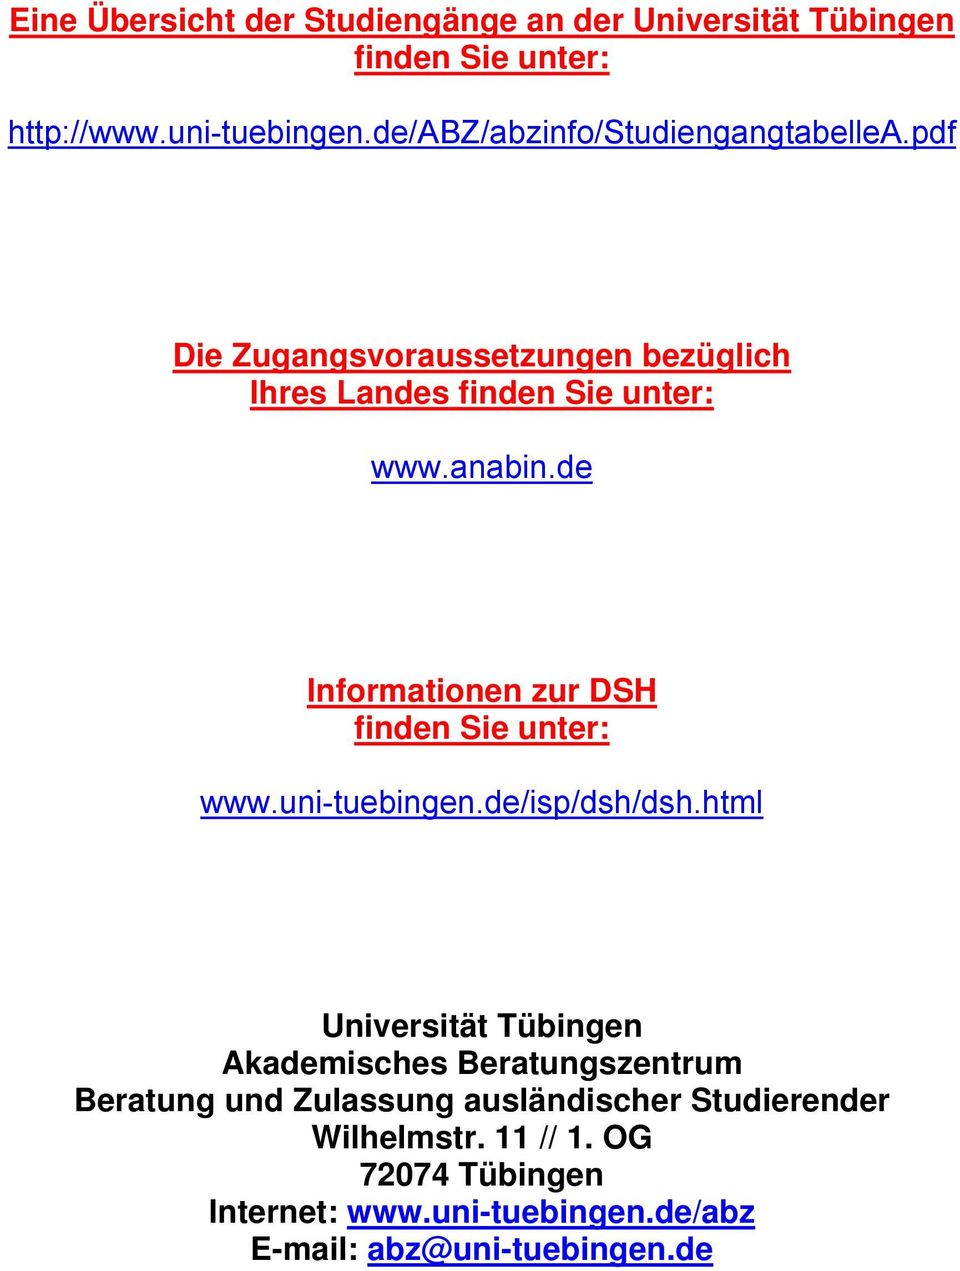 de Informationen zur DSH finden Sie unter: www.uni-tuebingen.de/isp/dsh/dsh.